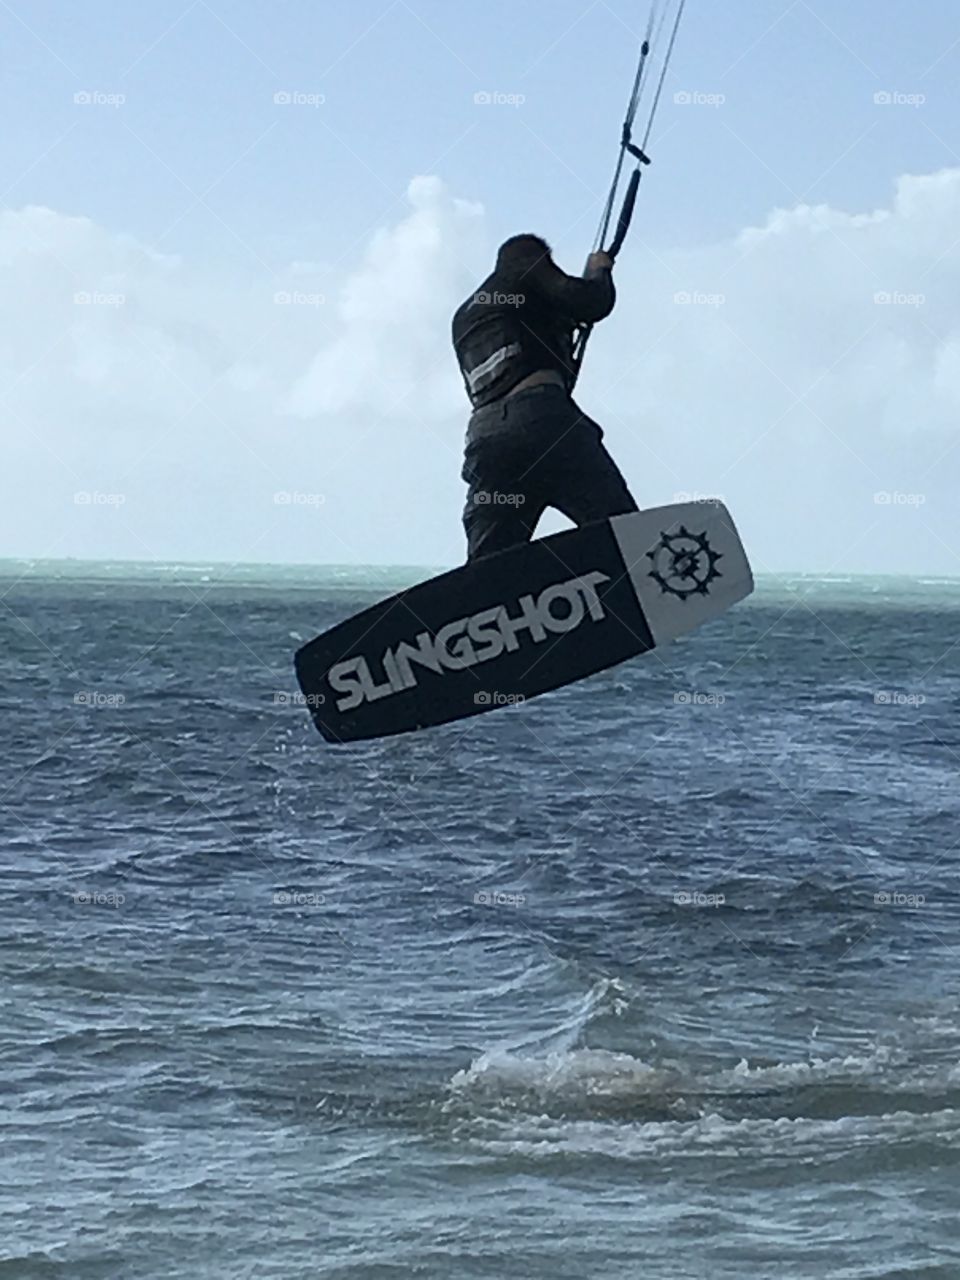 Slingshot kiteboarding